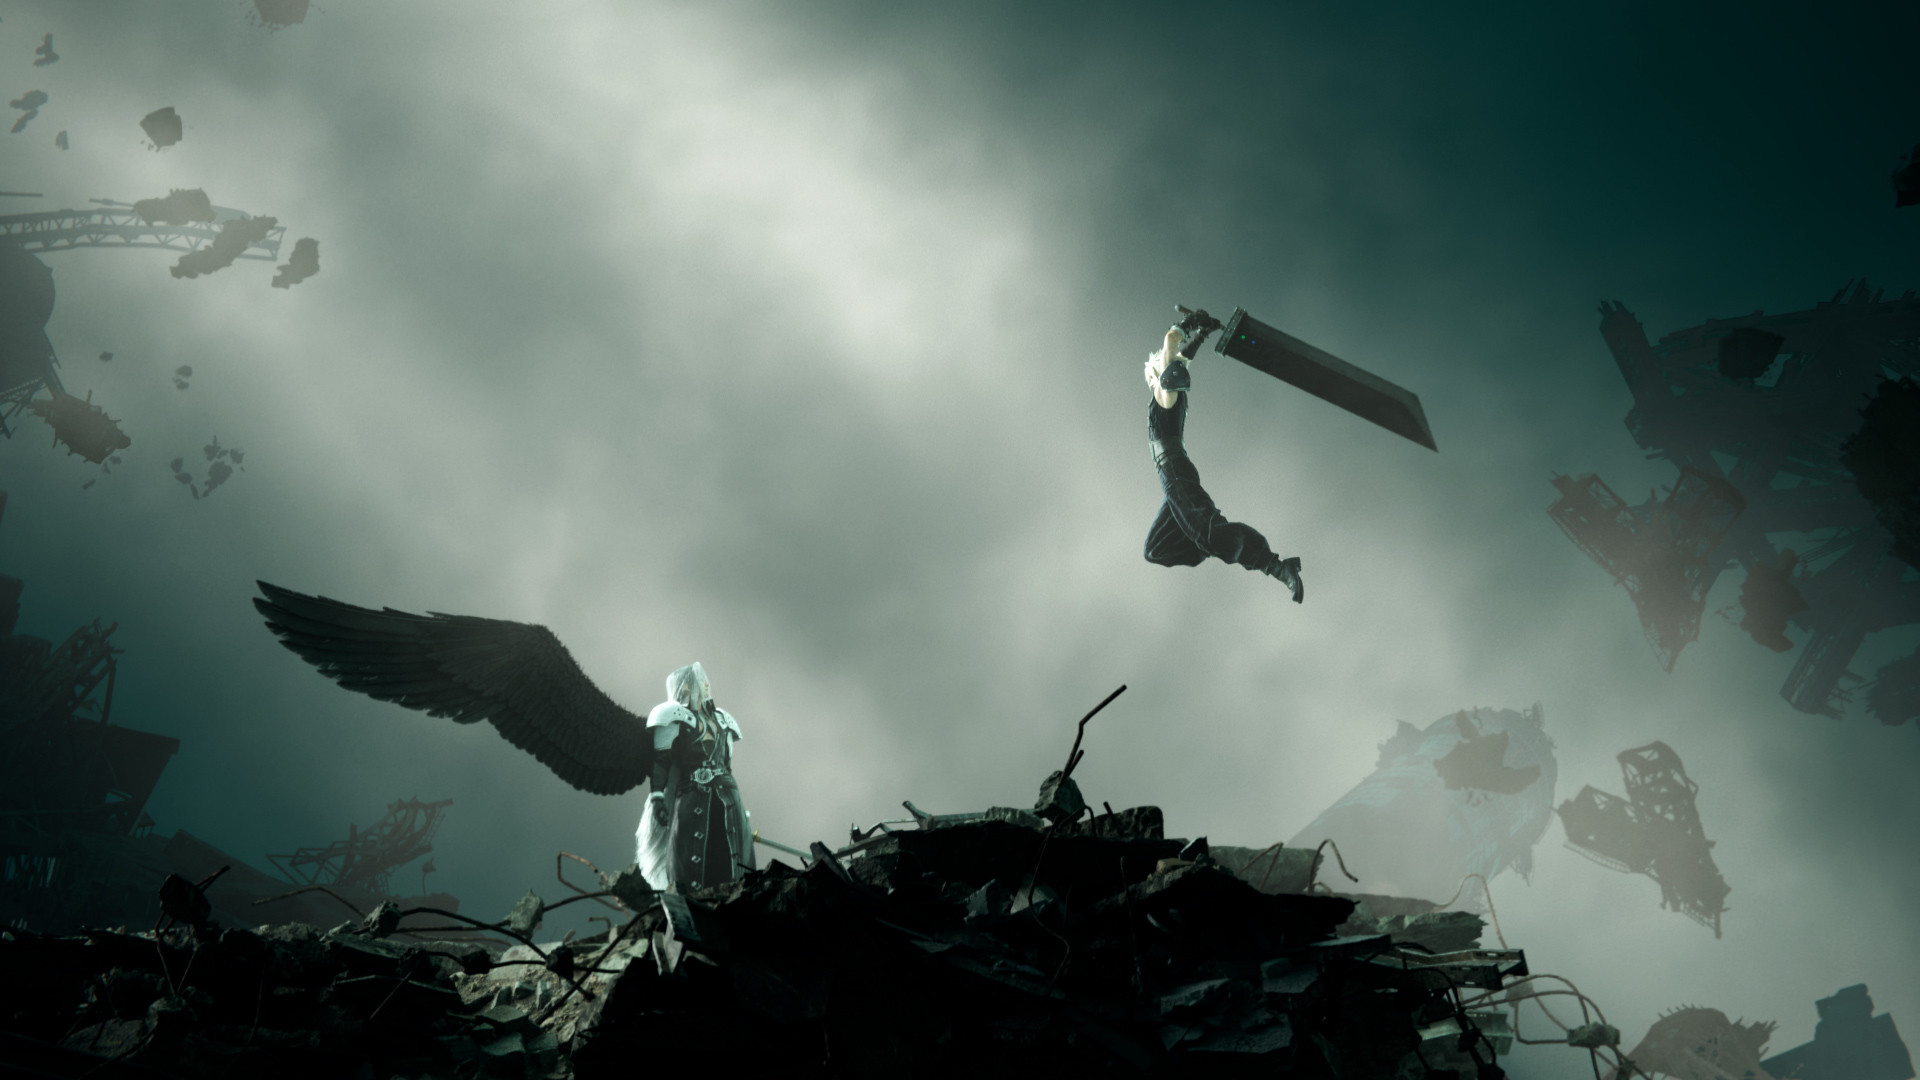 حمله کلود استرایف به سفیروث در بازی فاینال فانتزی 7 ریبرث، محصول شرکت اسکوئر انیکس برای کنسول PS5 (قسمت دوم سه‌گانه ریمیک فاینال فانتزی ۷)